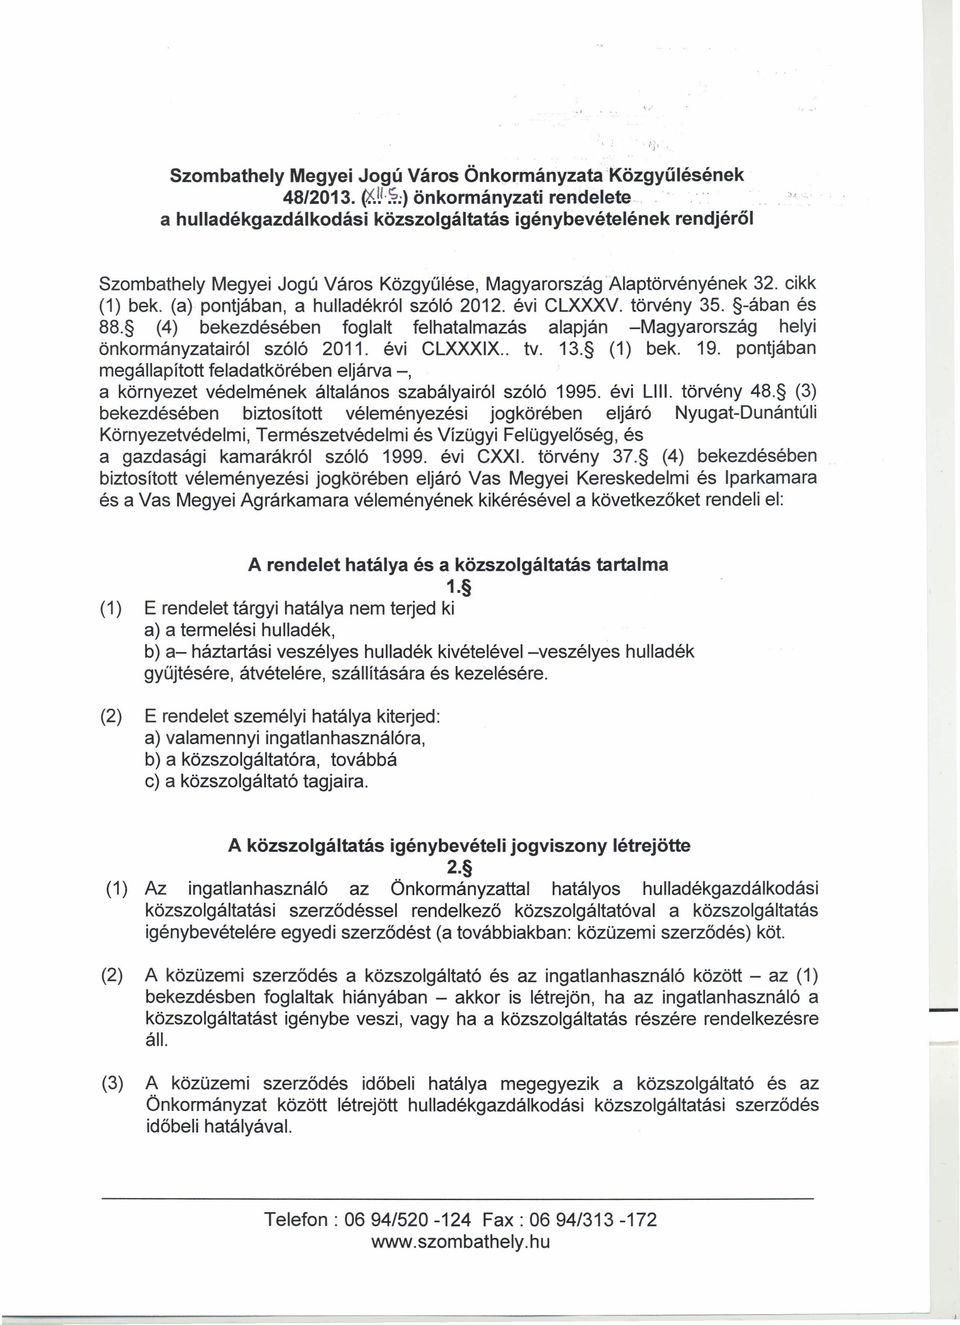 évi CLXXXV. törvény 35. -ában és 88. (4) bekezdésében foglalt felhatalmazás alapján -Magyarország helyi önkormányzatairól szóló 2011. évi CLXXXIX.. tv. 13. (1) bek. 19.